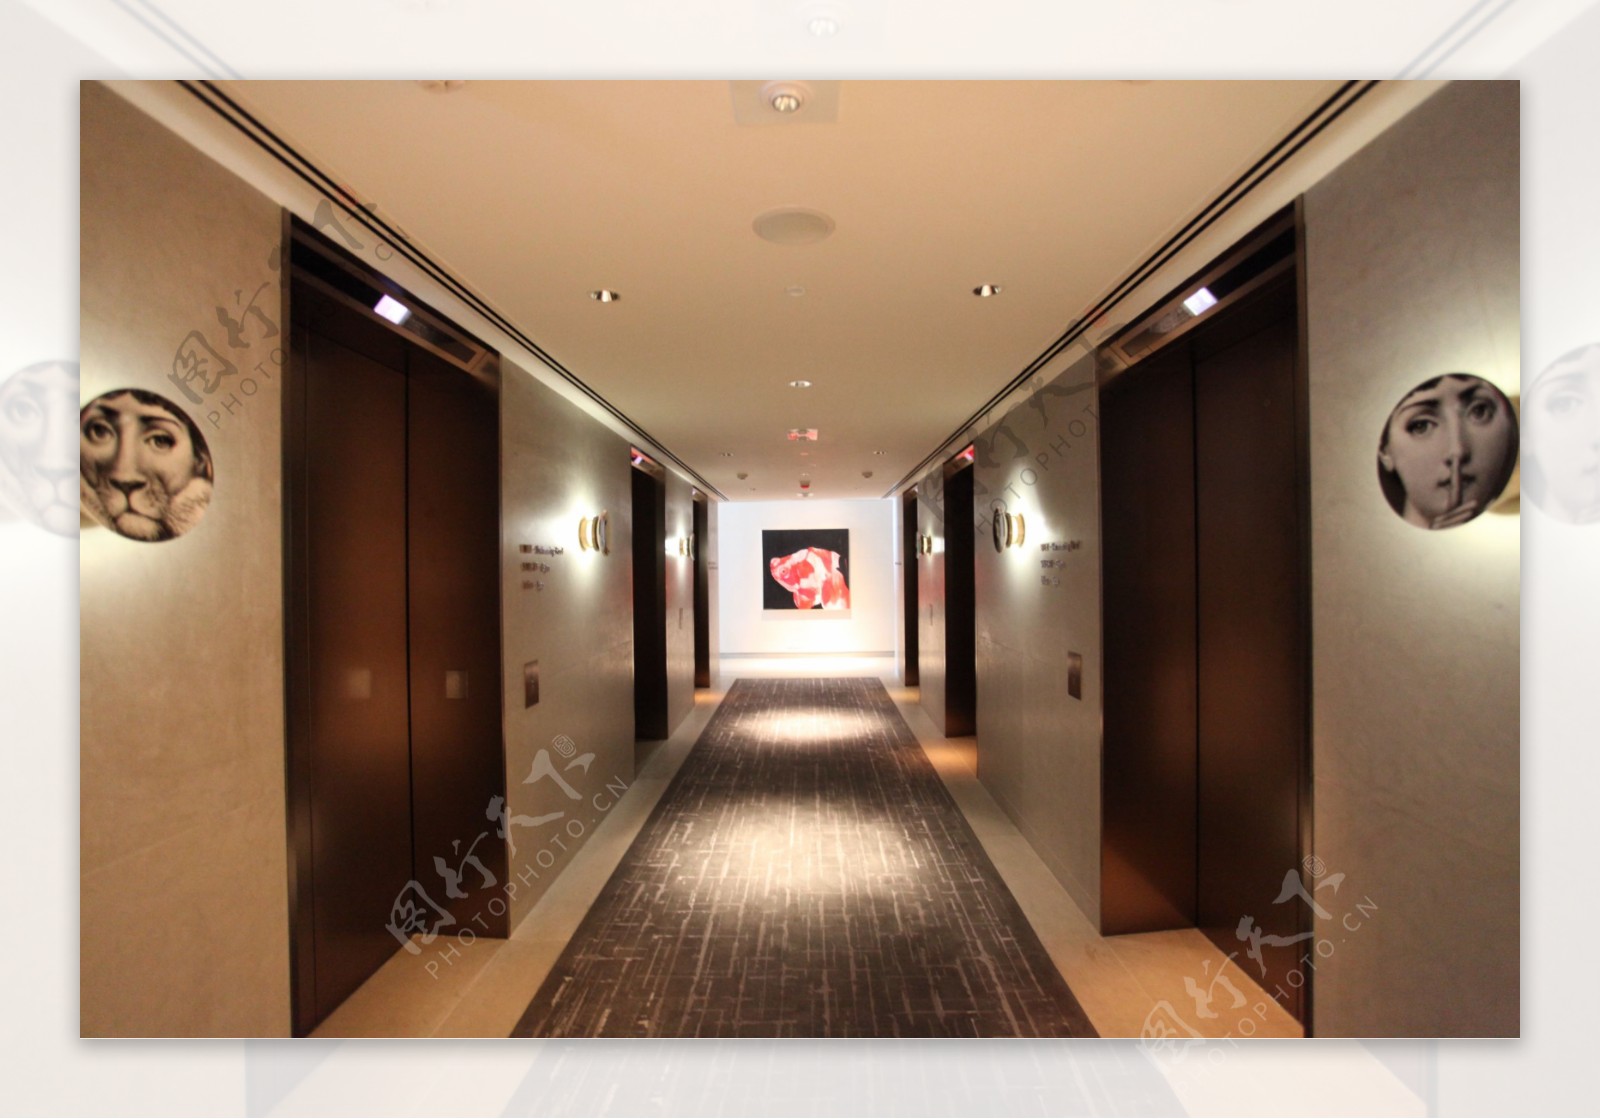 香港W酒店走廊装修效果图图片